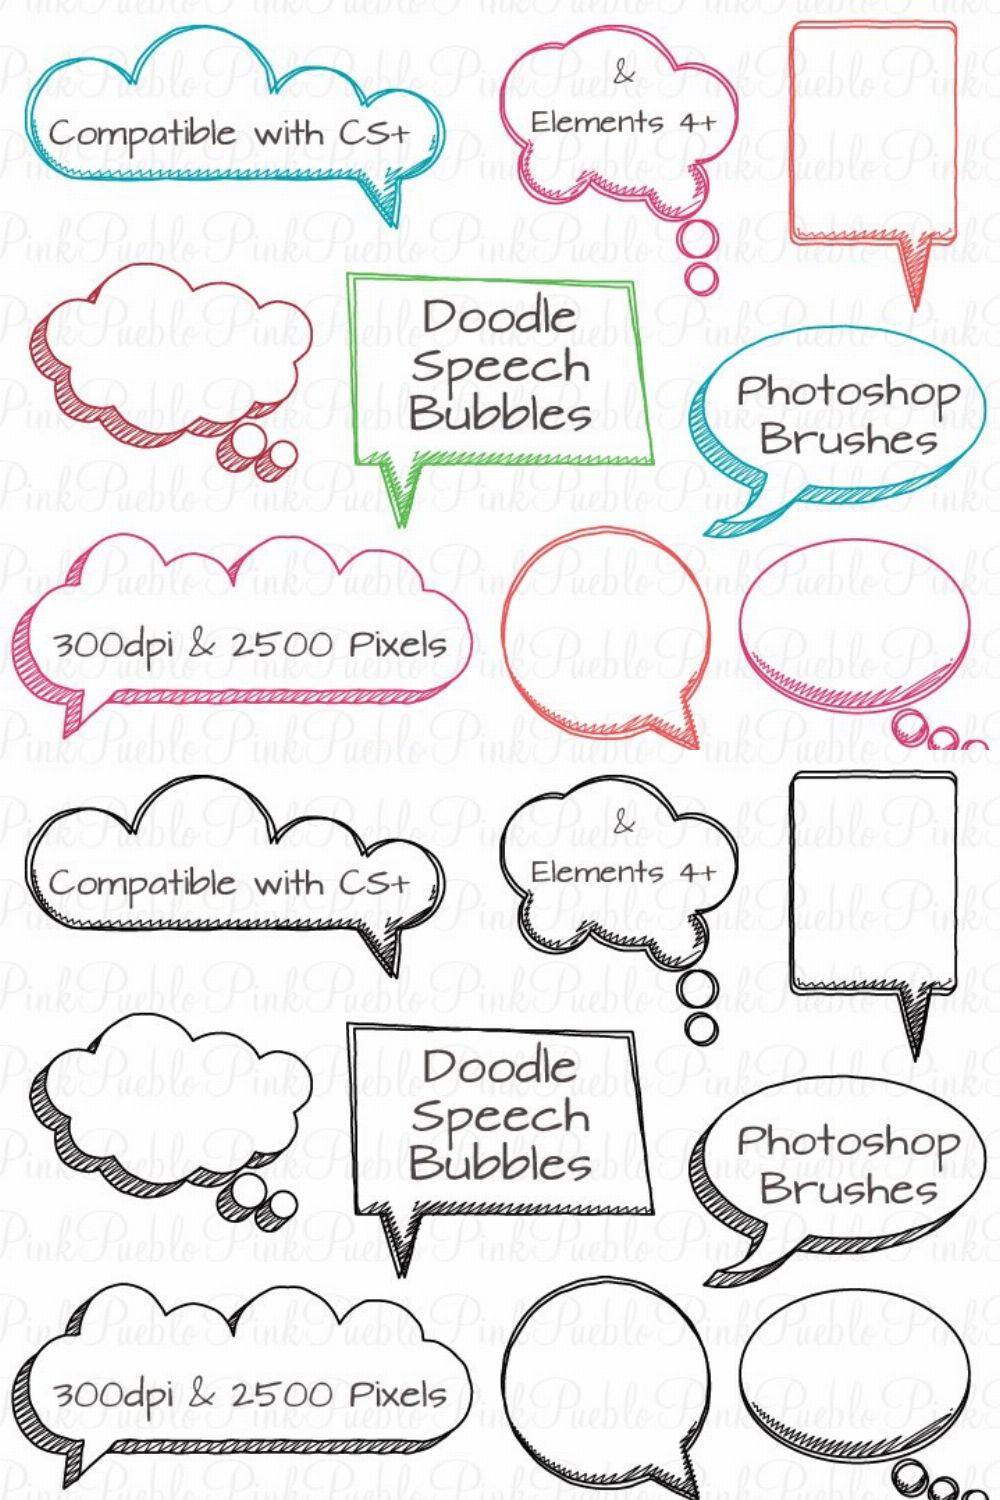 Doodle Speech Bubbles PS Brushes pinterest preview image.